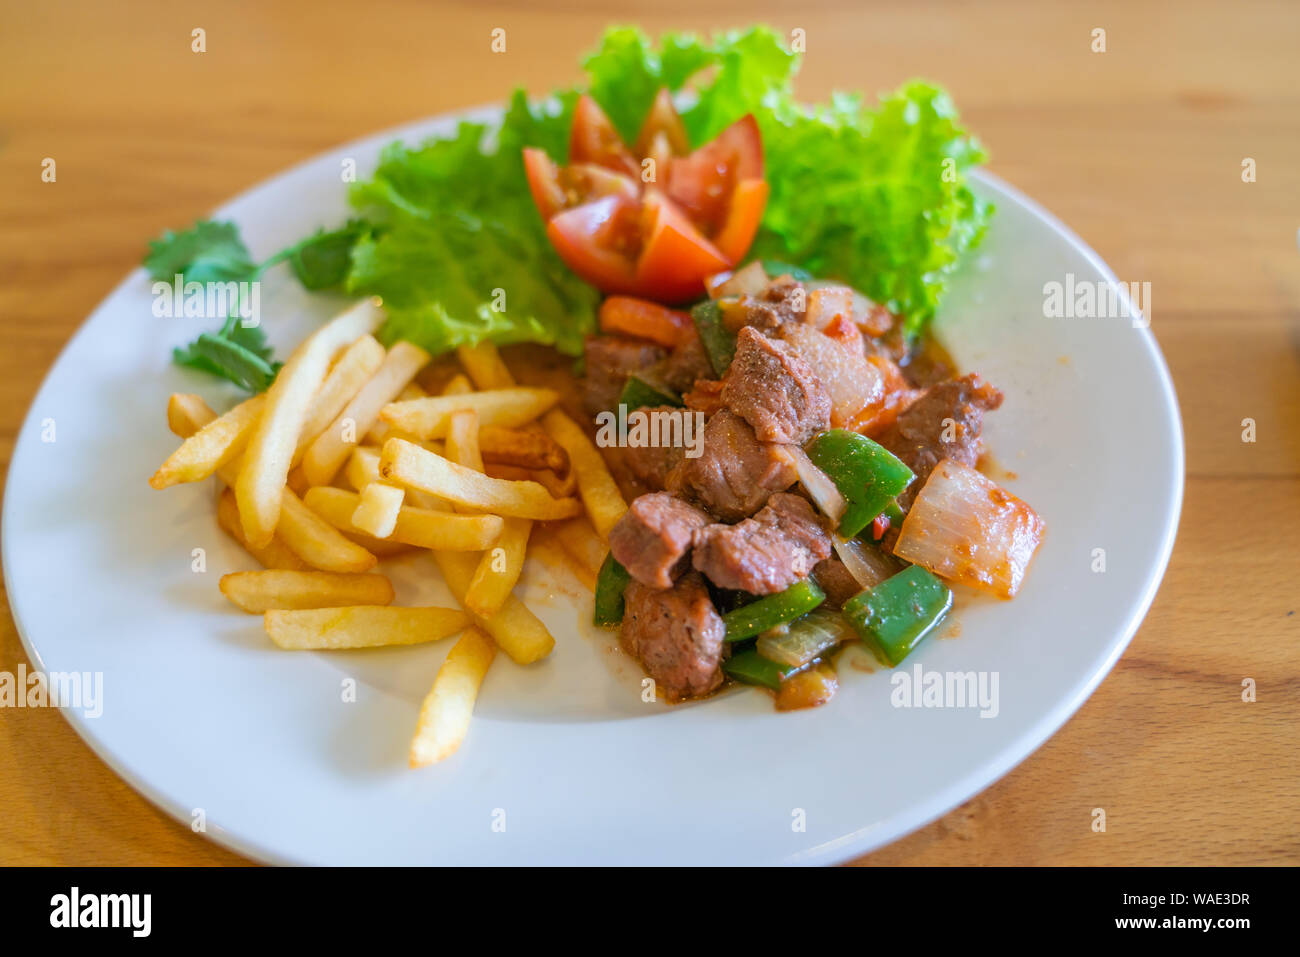 Délicieuse recette de style asiatique sauté de boeuf et salade Banque D'Images